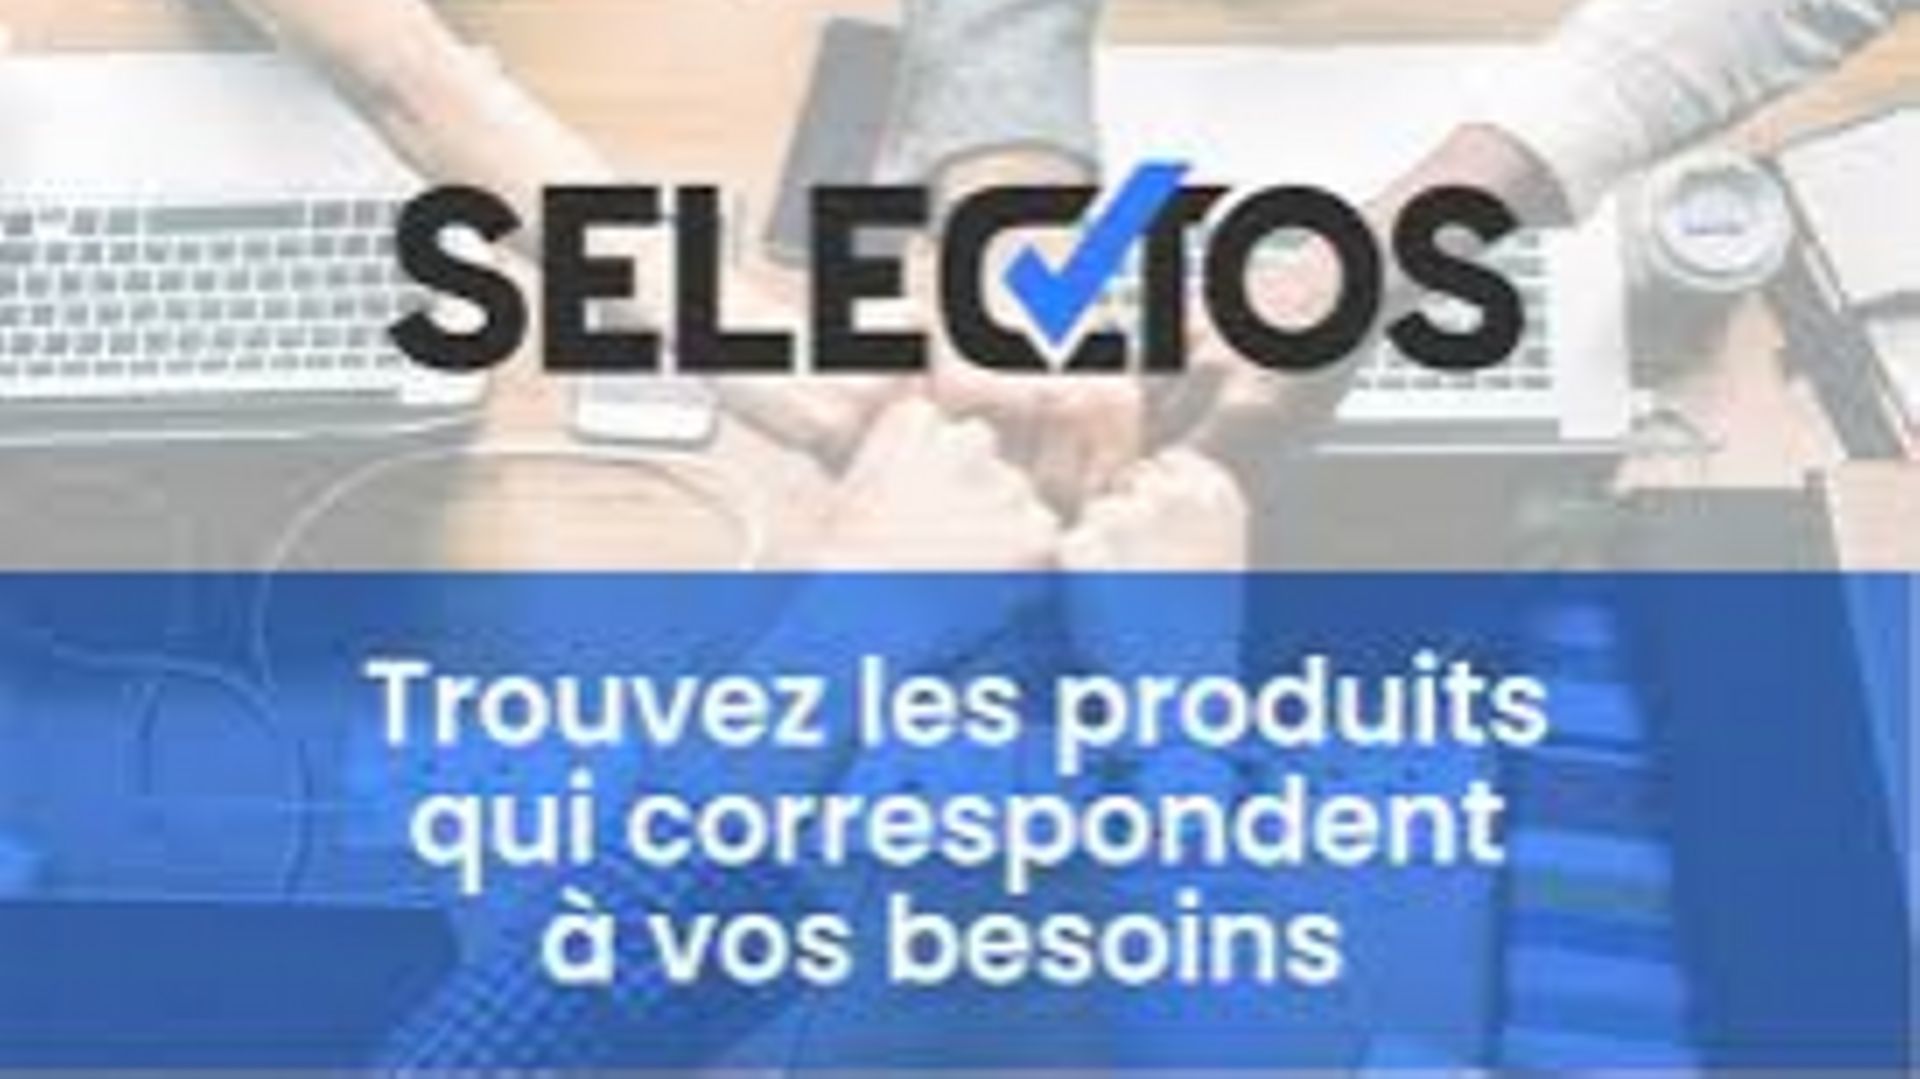 Un nouveau site liégeois: Selectos